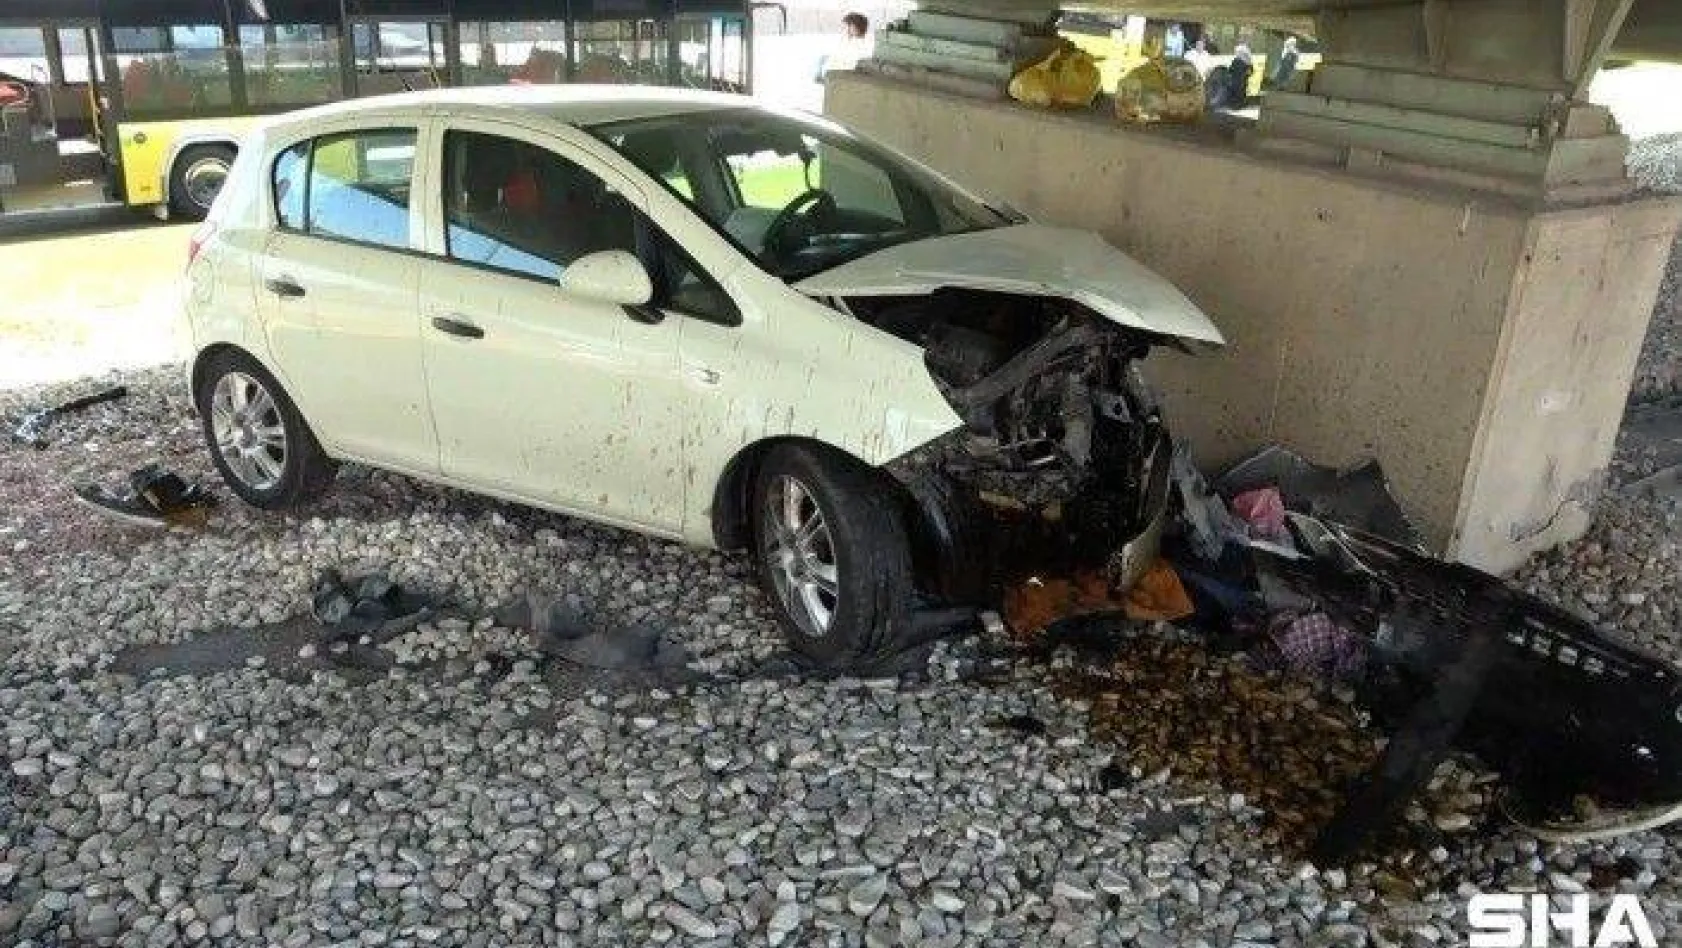 Kadıköy'de aracın çarptığı otomobil köprü duvarına çarptı: 1 yaralı